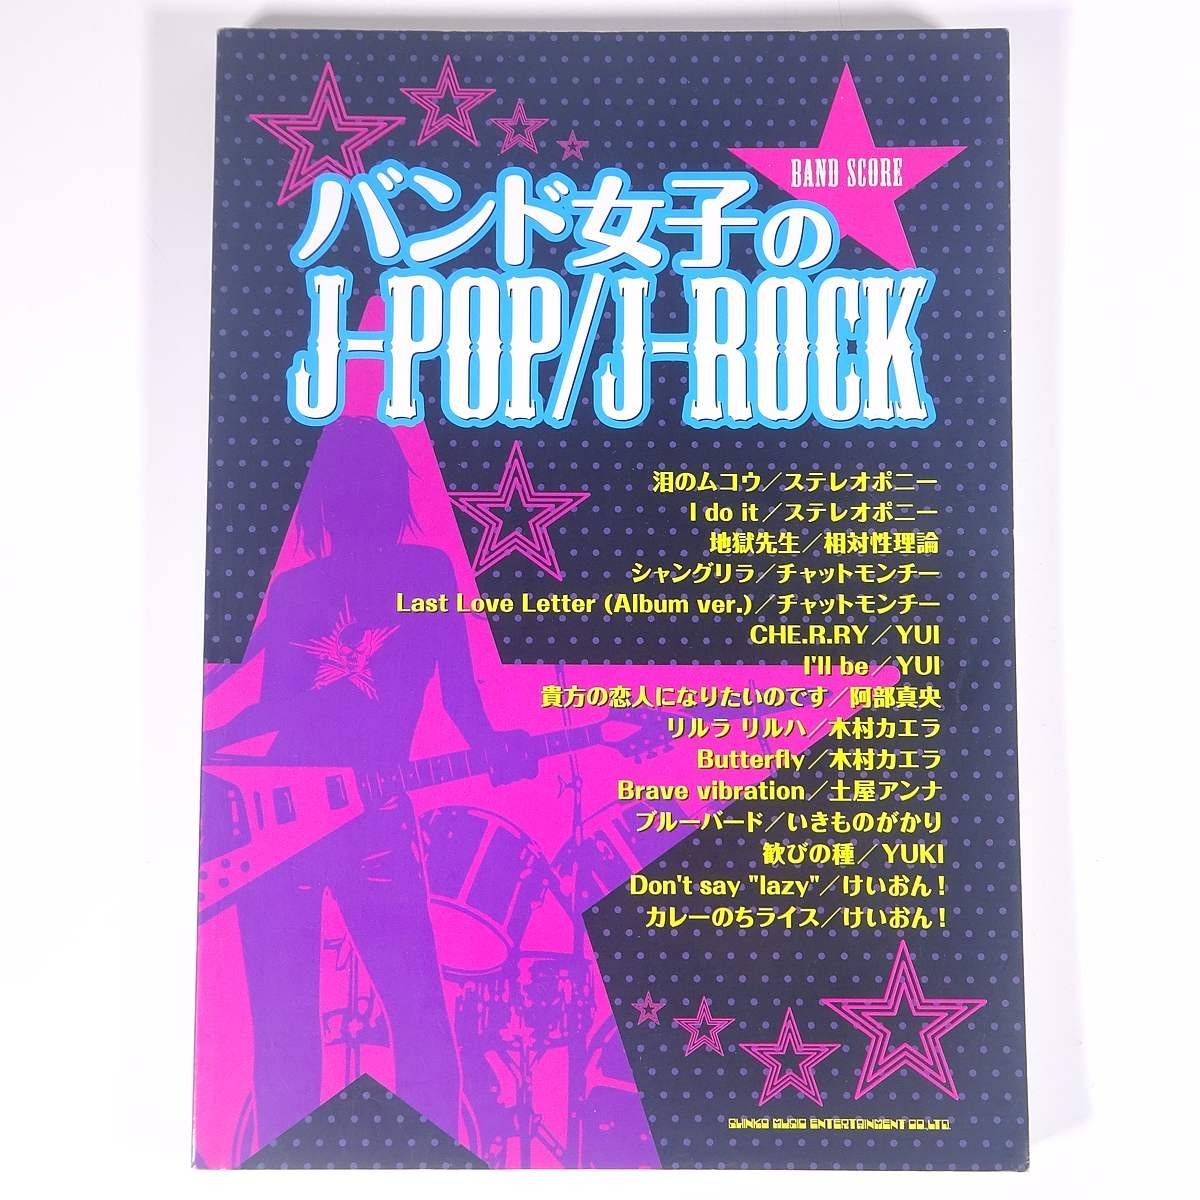 【楽譜】 バンド女子のJ-POP/J-ROCK バンド・スコア シンコーミュージック 2009 大型本 音楽 邦楽 バンドスコア_画像1